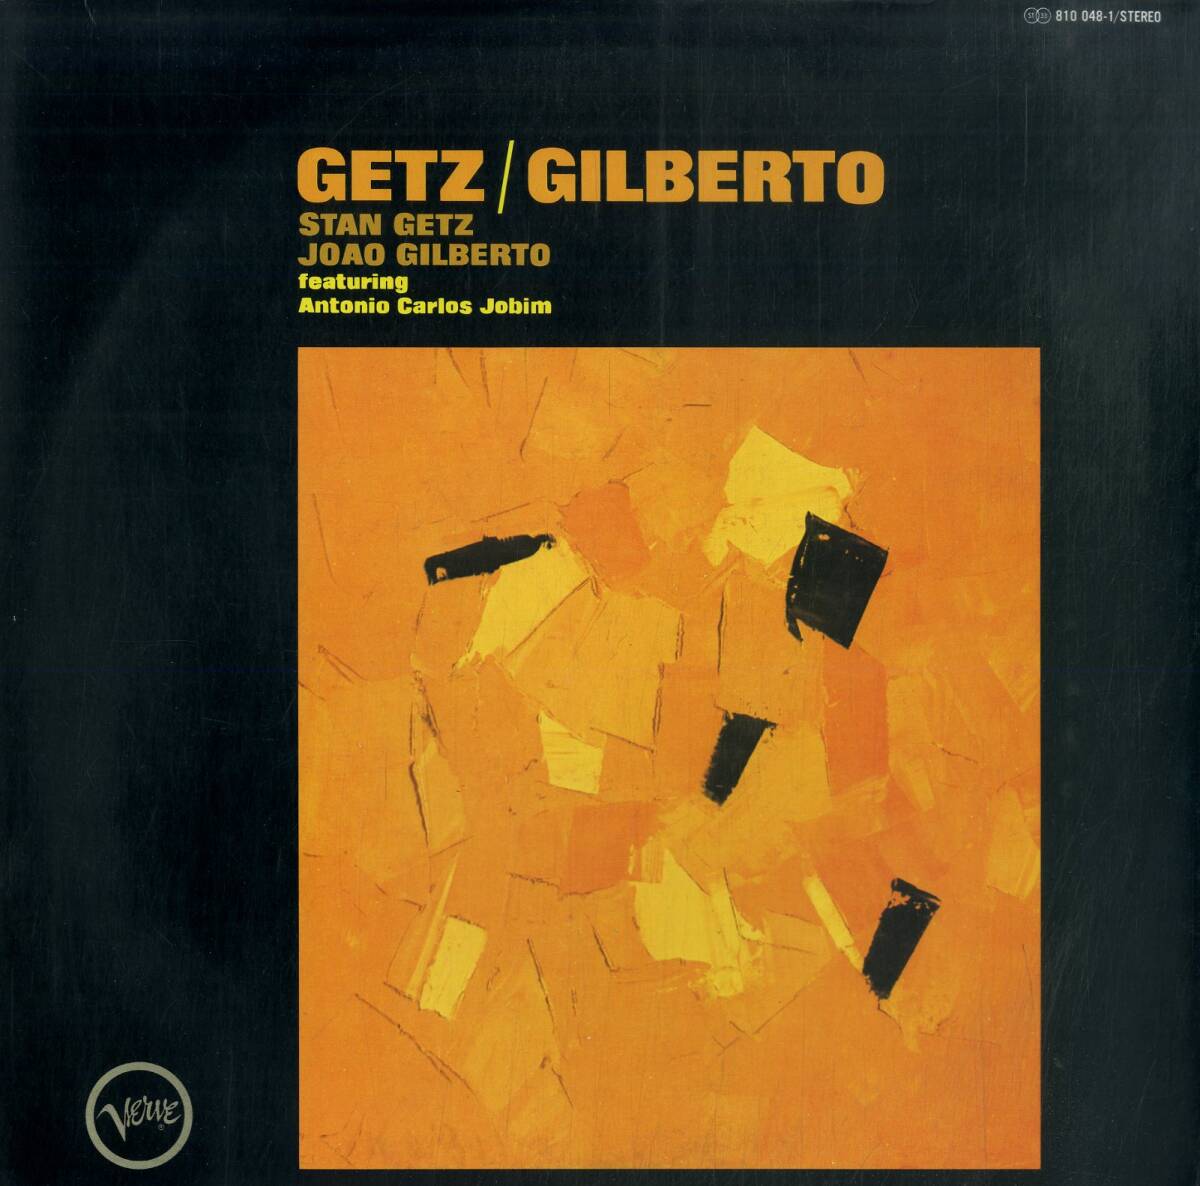 A00592360/LP/スタン・ゲッツ / ジョアン・ジルベルト feat.アントニオ・カルロス・ジョビン「Getz / Gilberto (1989年・810-048-1・ボサの画像1